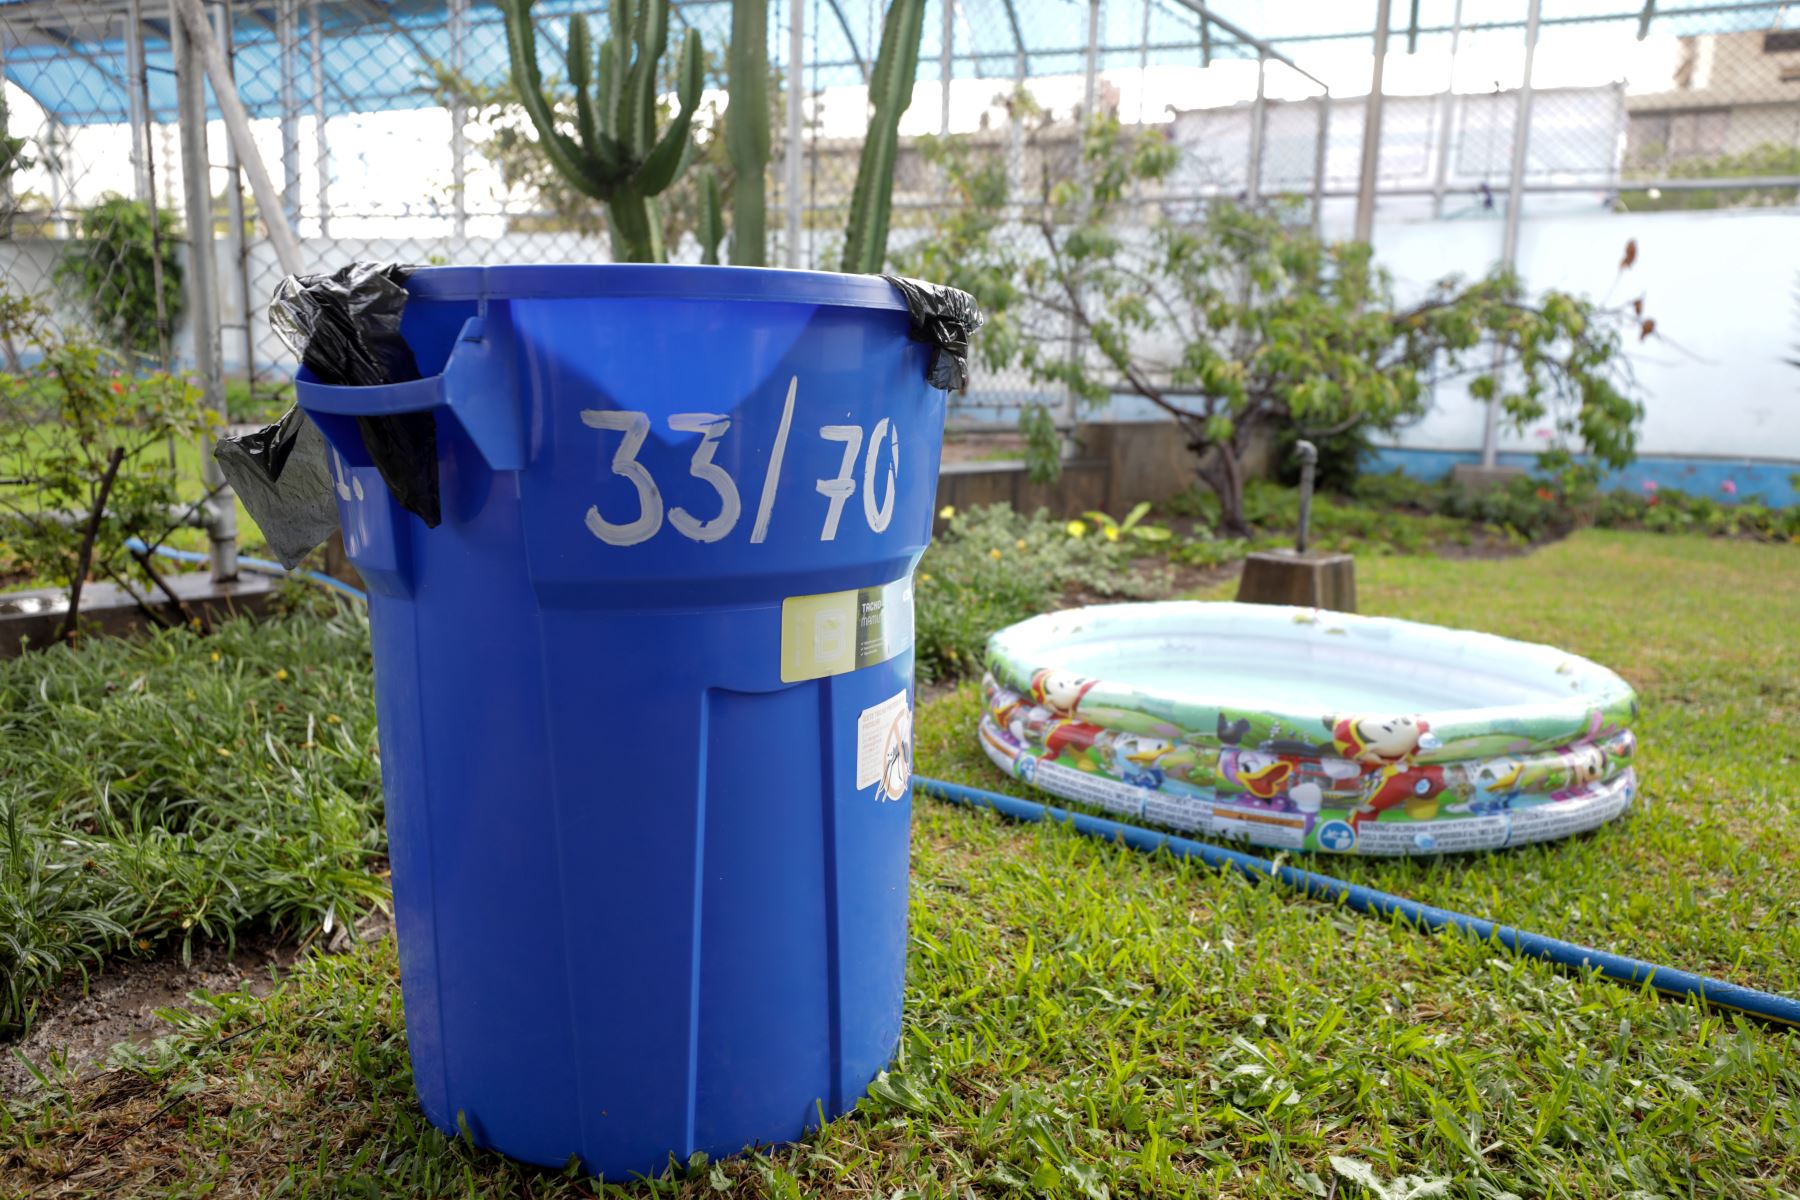 Recomiendan eliminar aguas estancadas para evitar dengue, zika y la chinkungunya. Foto: Andina